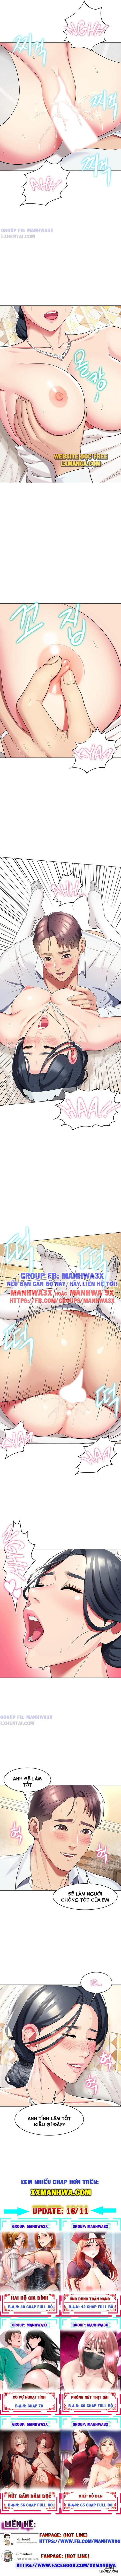 manhwax10.com - Truyện Manhwa Khóa Học Làm Tình Chương 52 End Trang 7